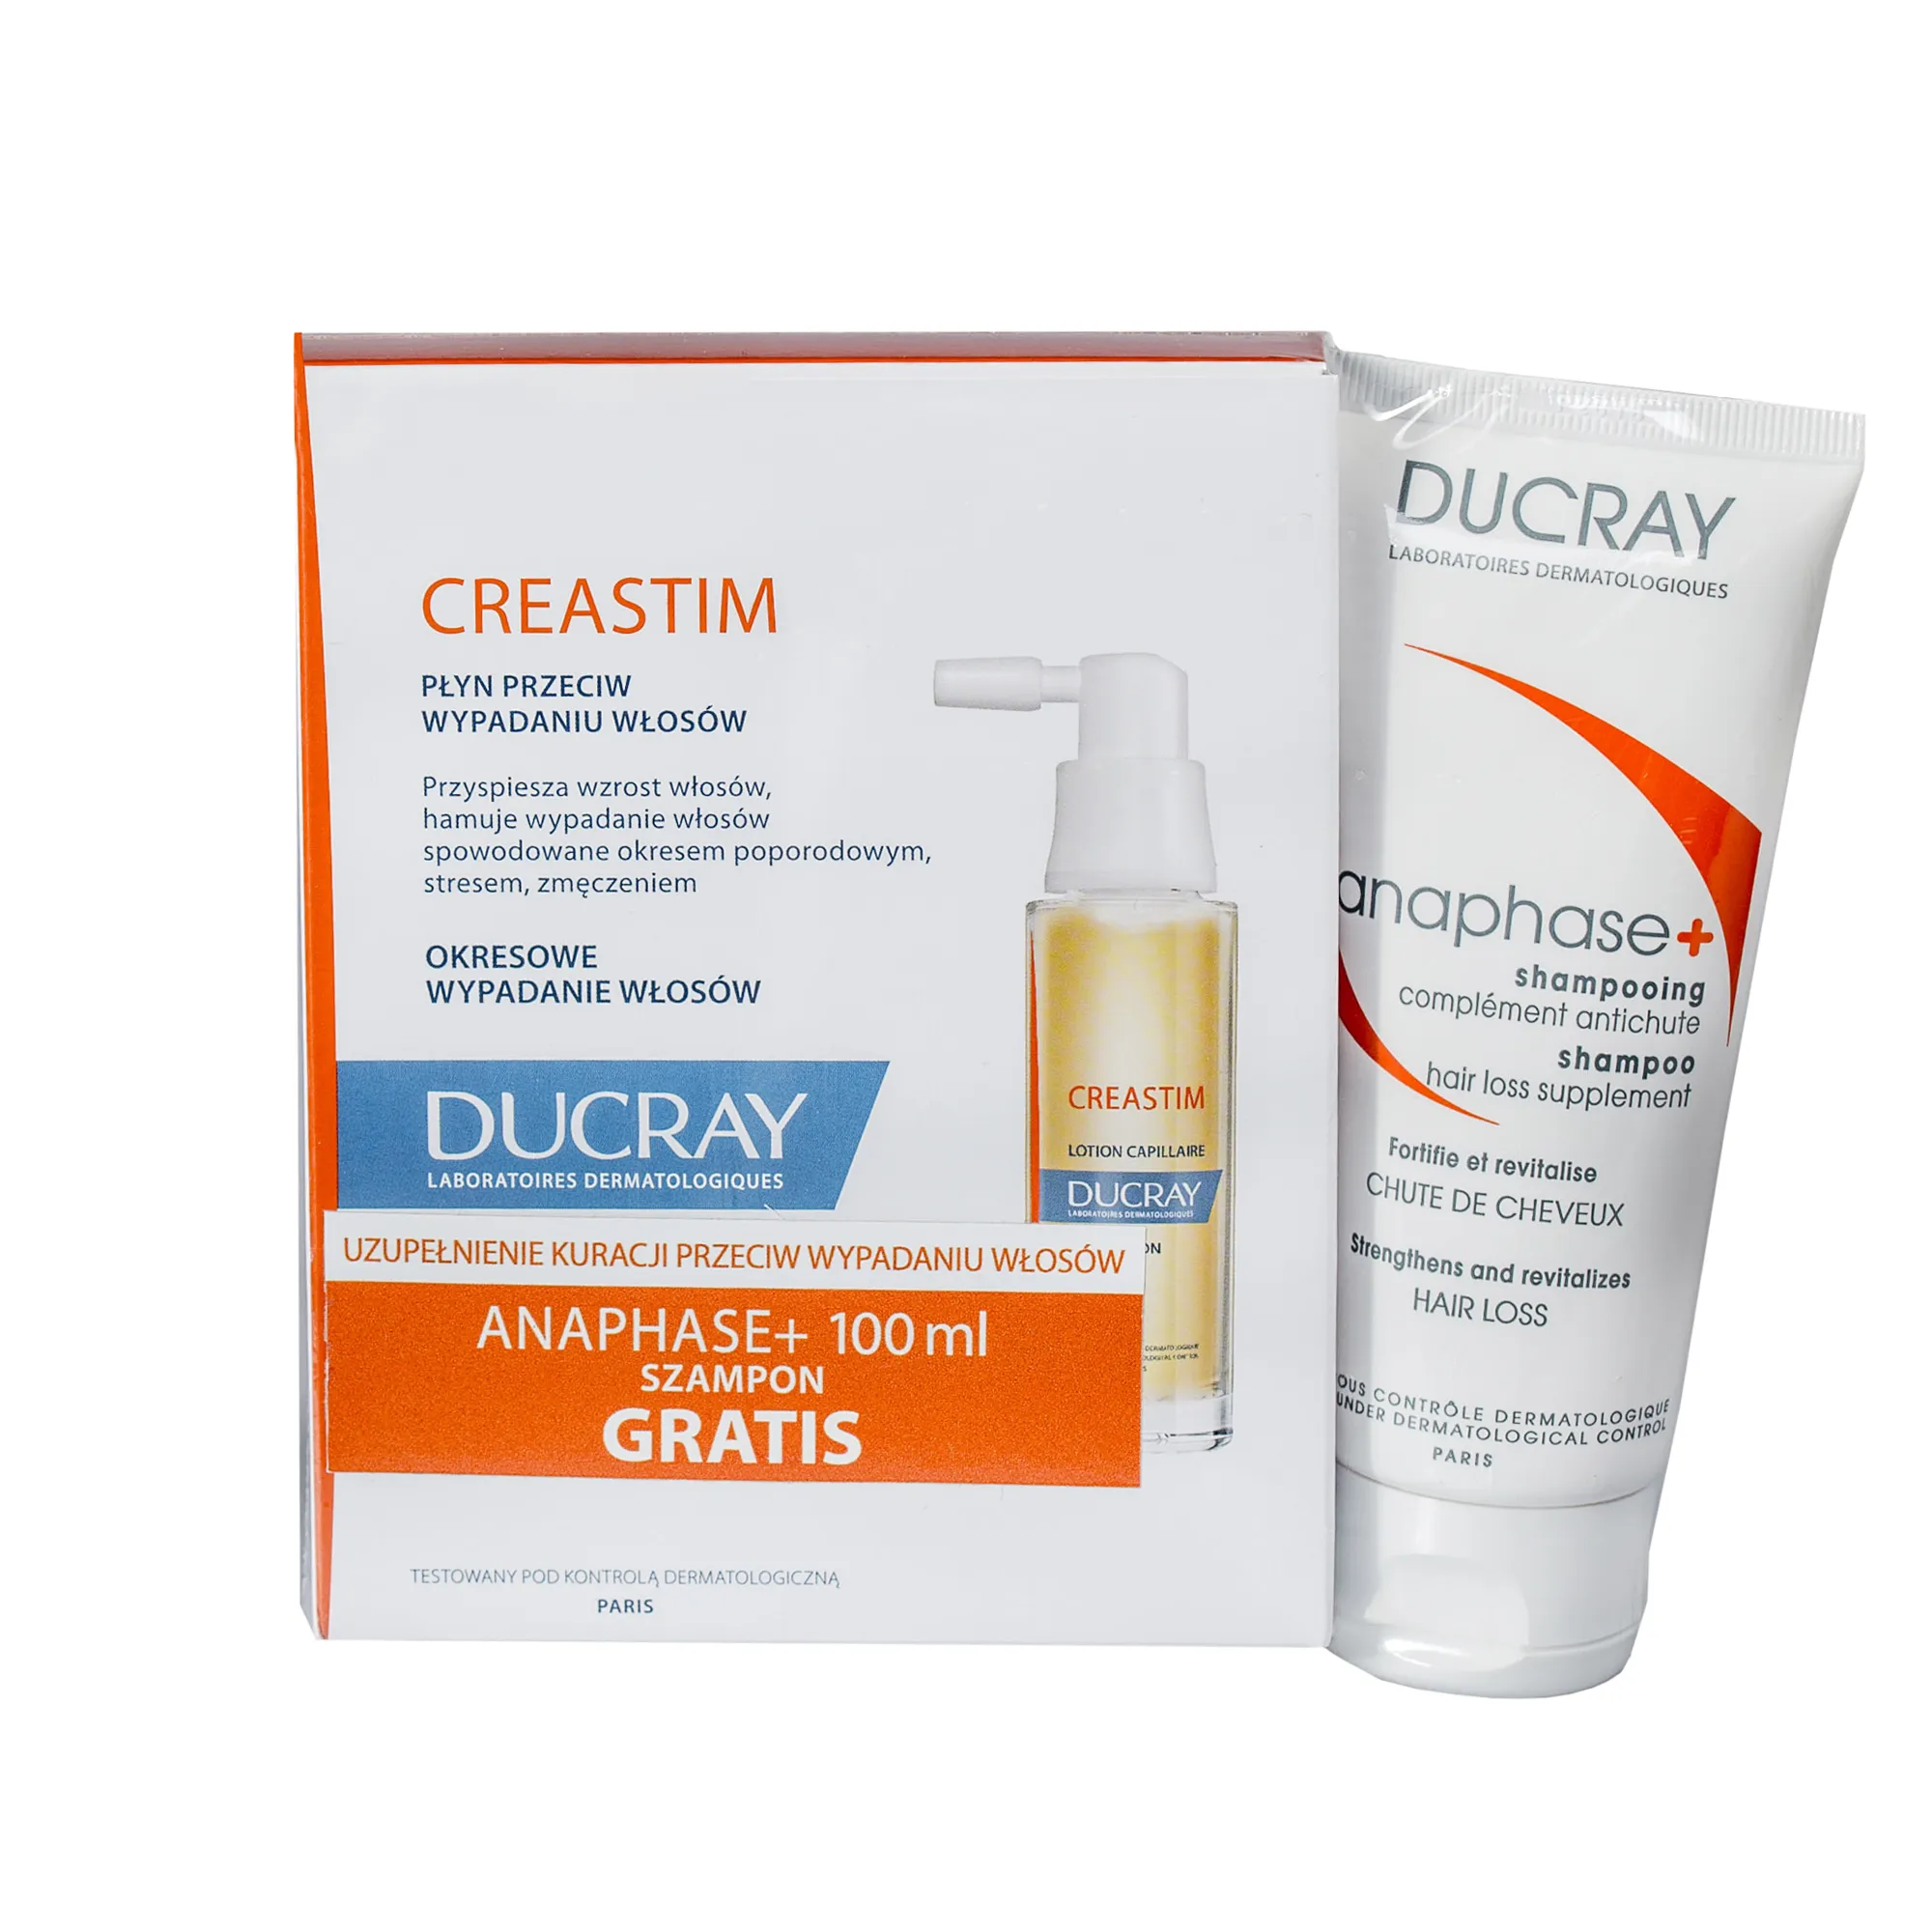 Ducray zestaw Creastim, płyn przeciw wypadaniu włosów, 2x30 ml + Anaphase+, szampon uzupełniający kurację przeciw wypadaniu włosów, 100 ml